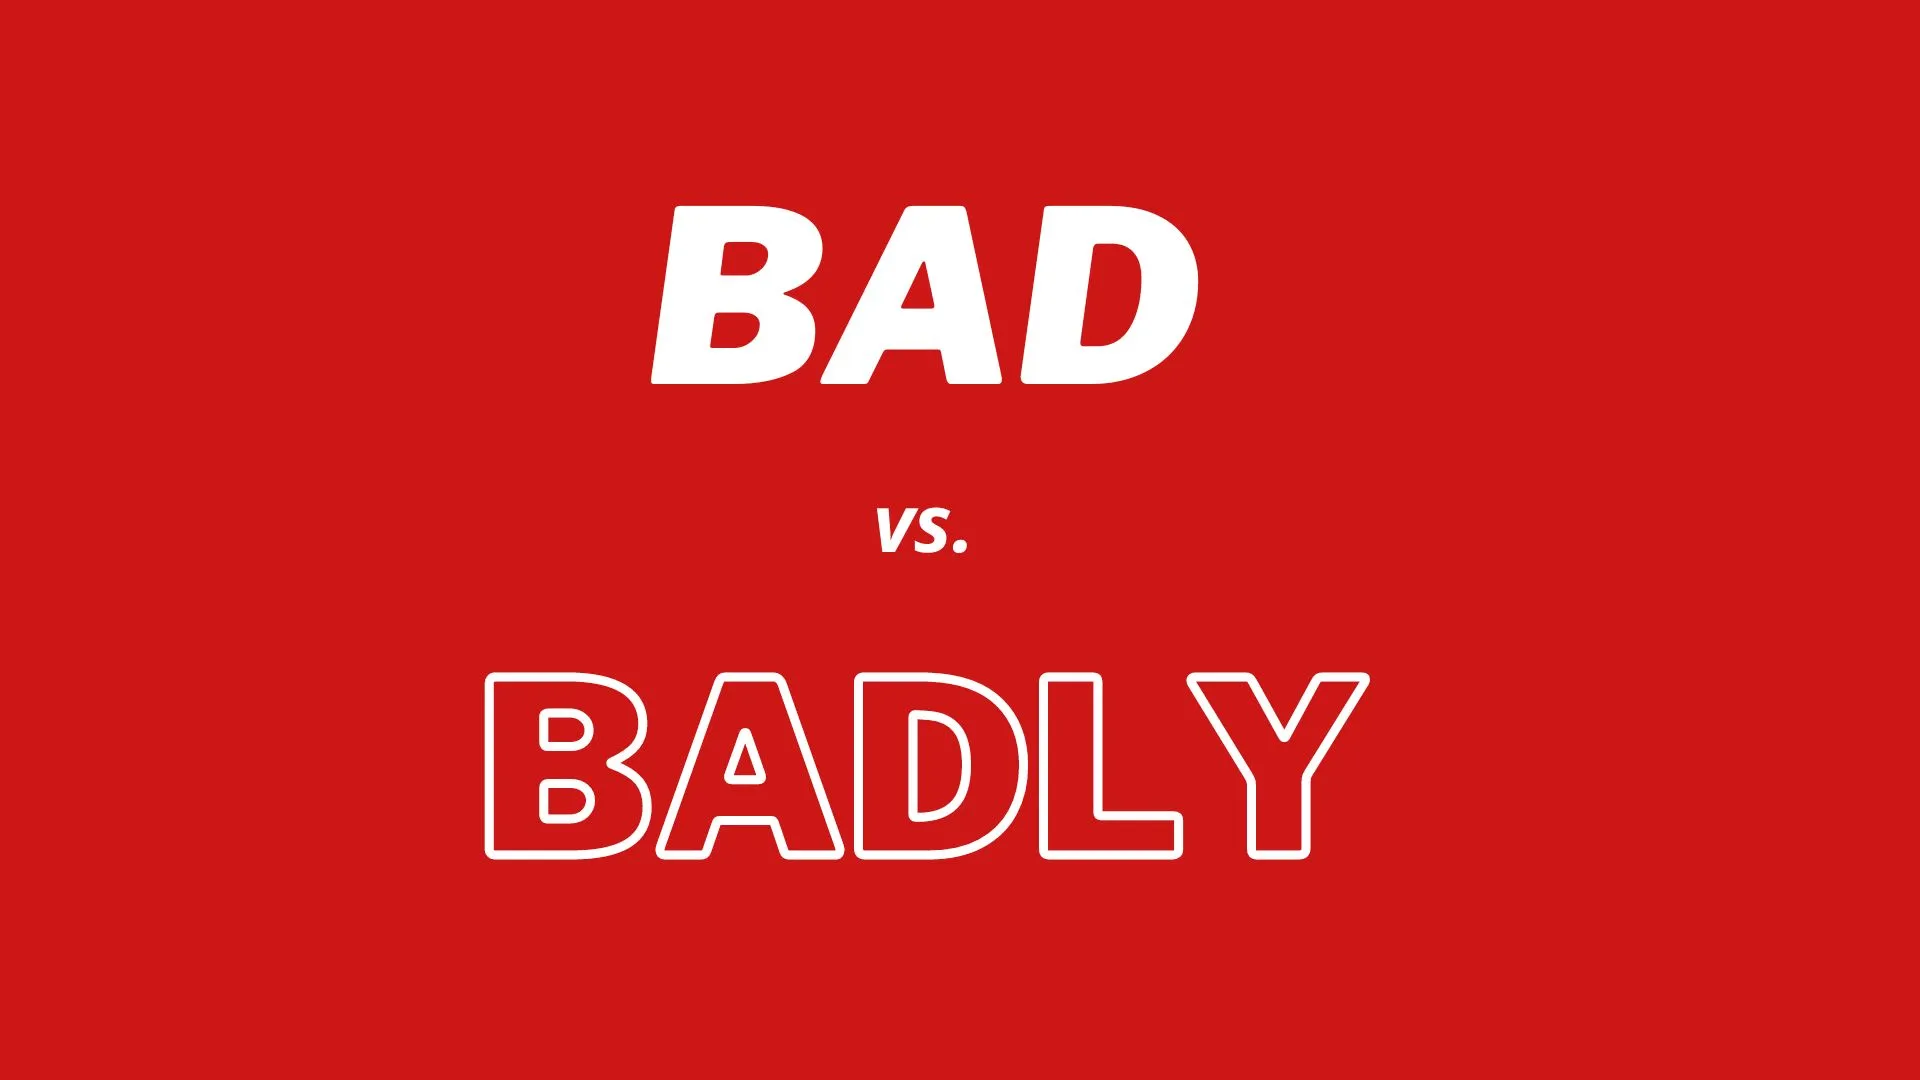 単語 "bad" と "badly" の視覚比較と定義。